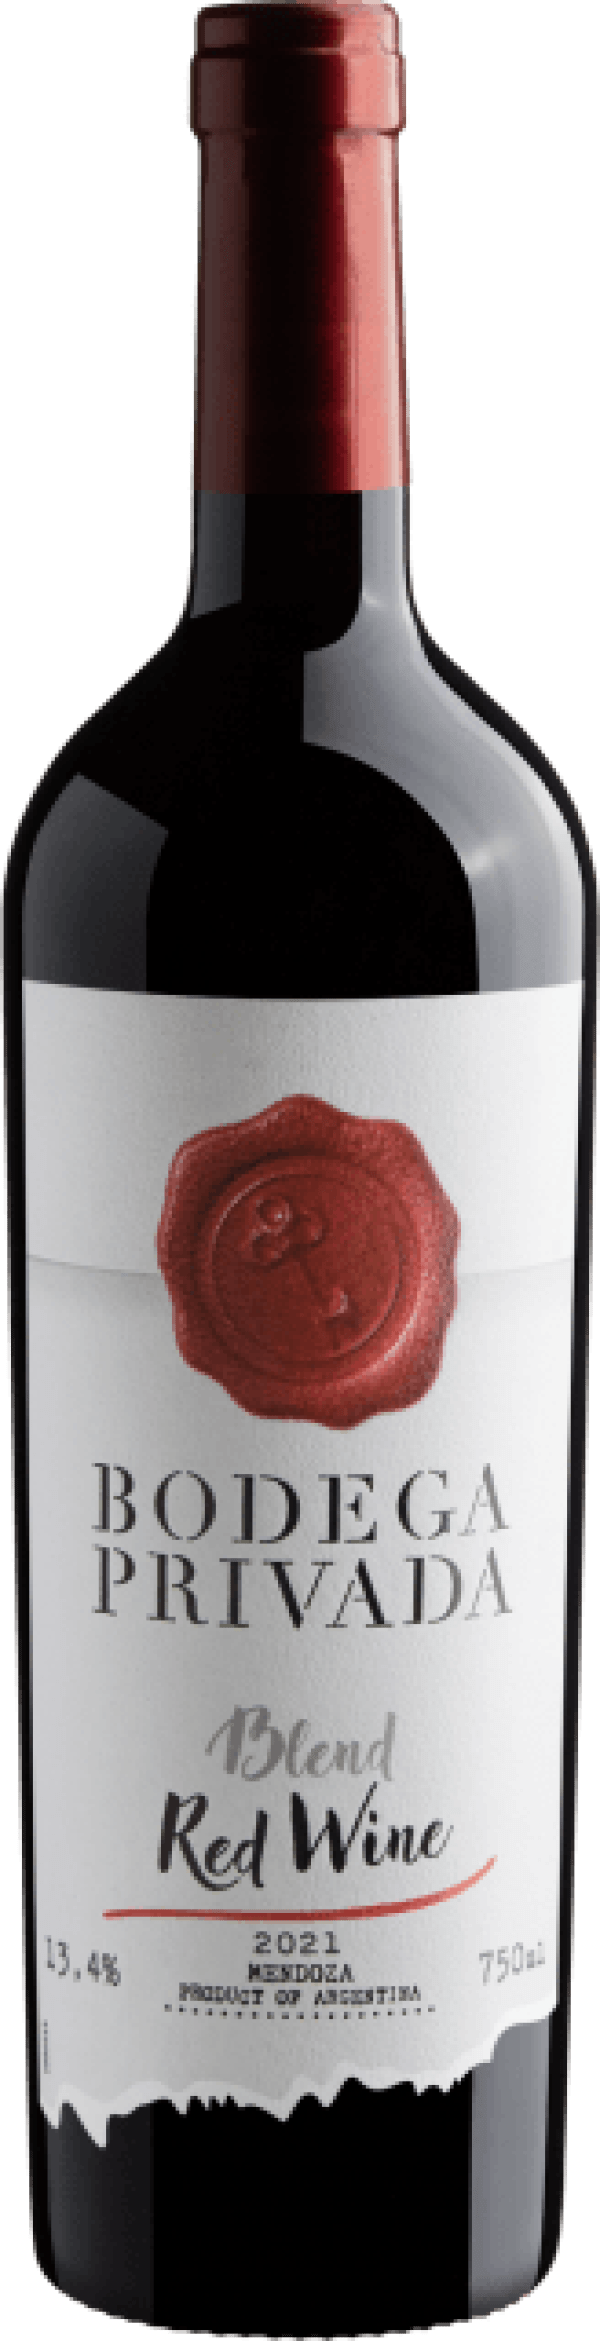 Bodega Privada Blend Red Wine 2021